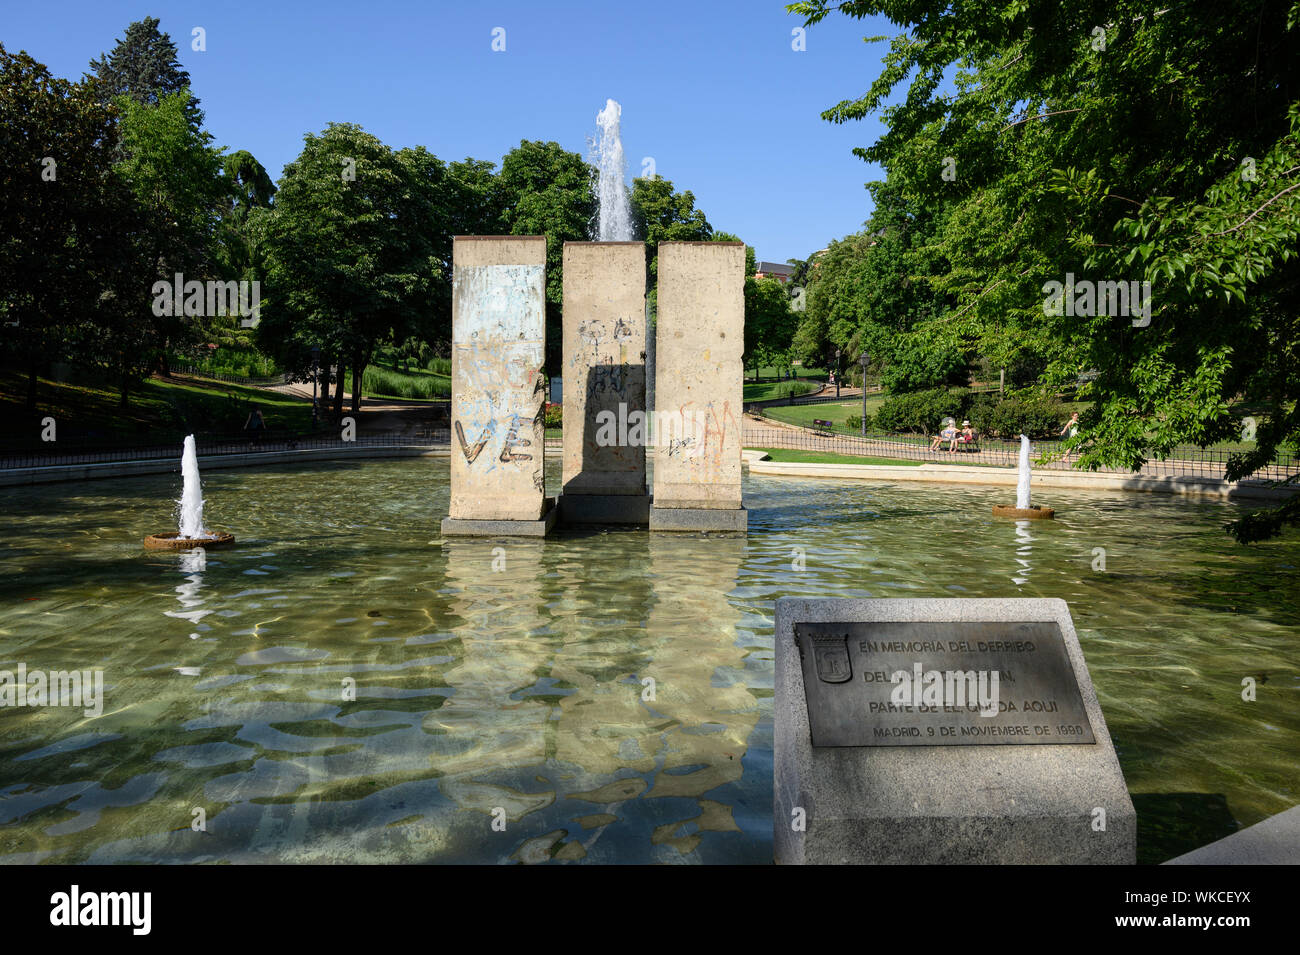 Madrid. L'Espagne. Parque de Berlín, vestiges du Mur de Berlin constituent le joyau de la fontaine dédiée à la démolition du mur de Berlin. Banque D'Images